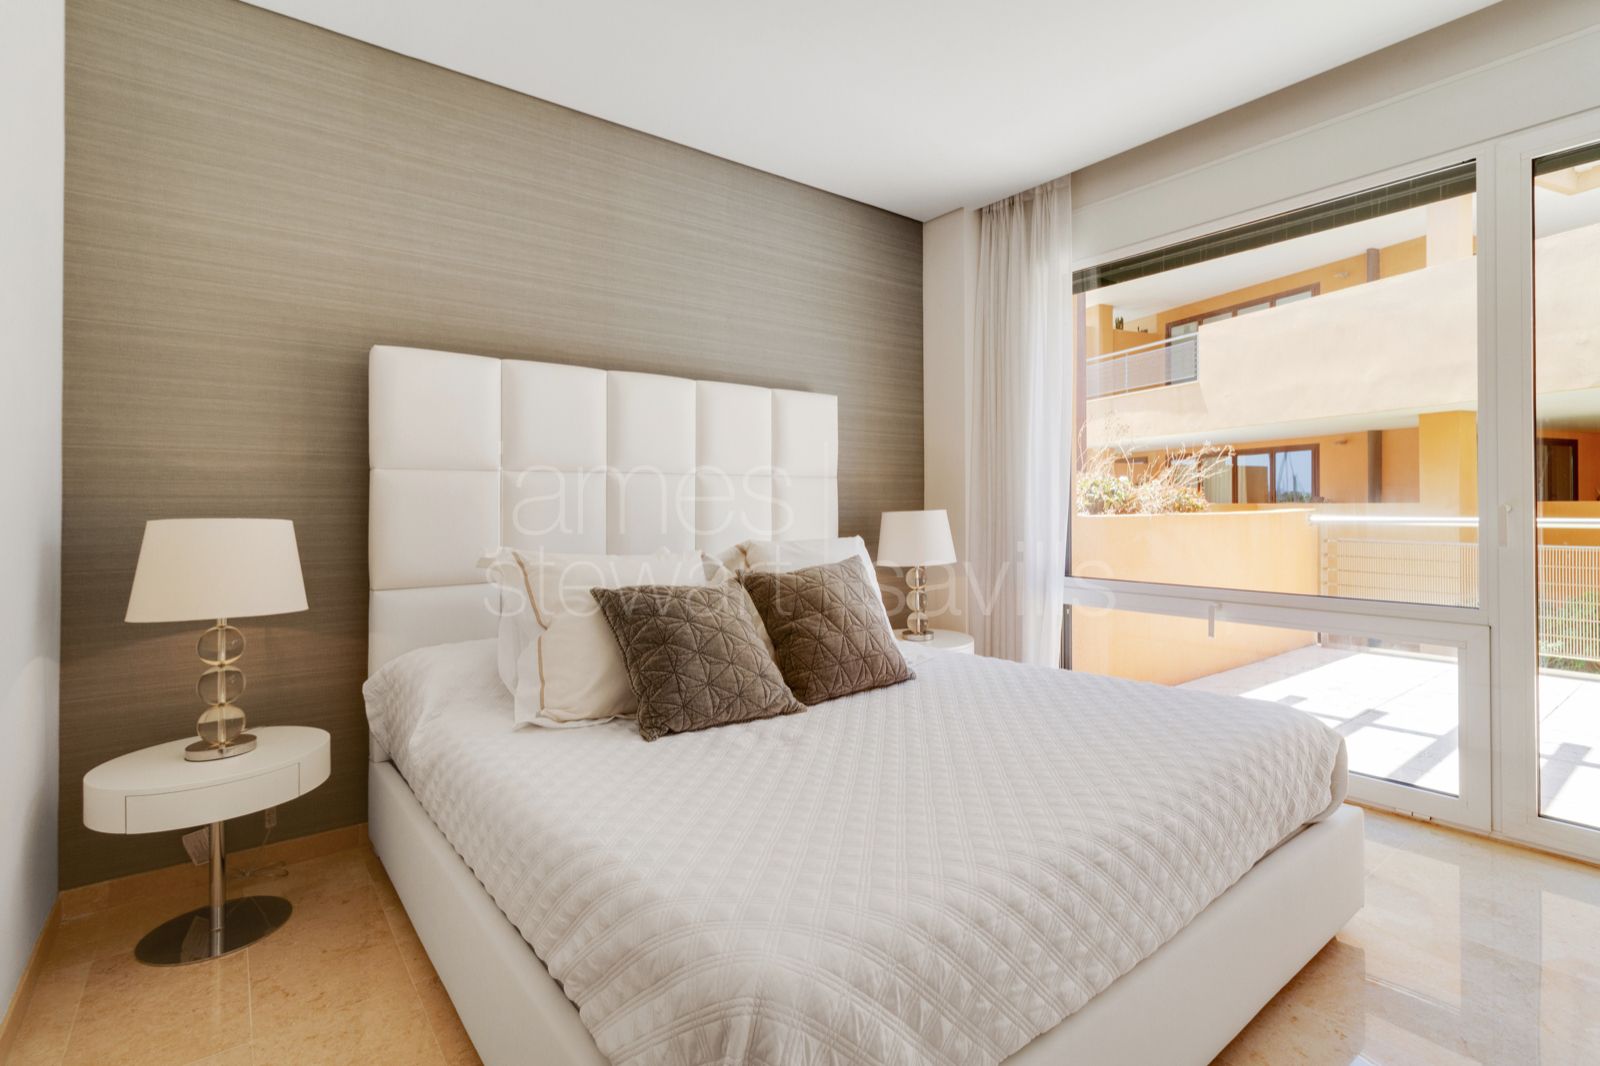 2 Bedroom apartment with views to La Marina de Sotogrande